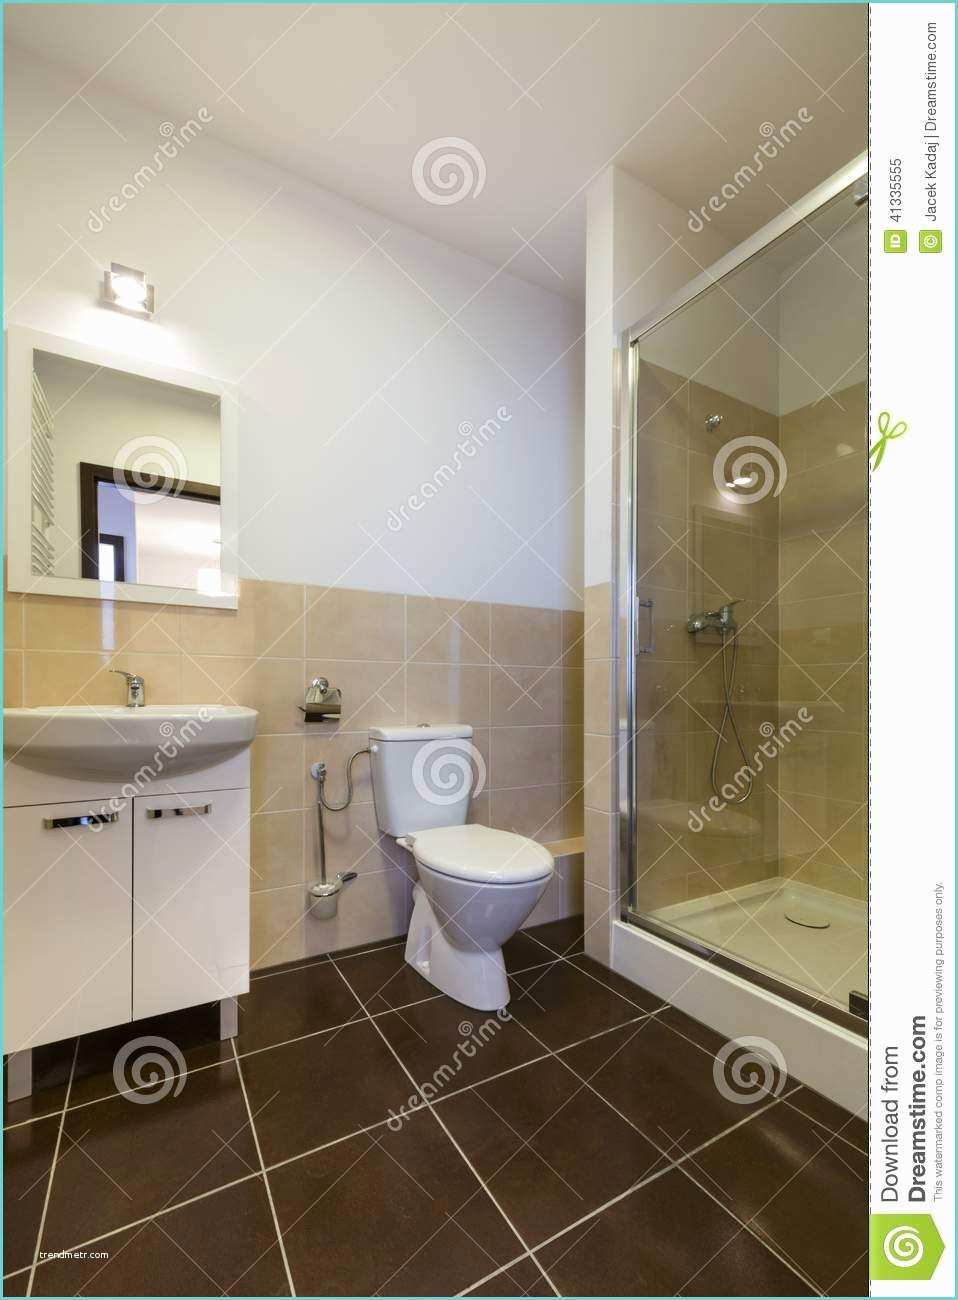 Toilette Et Douche Moderne Salle De Bains Moderne Avec Les éviers La toilette Et La